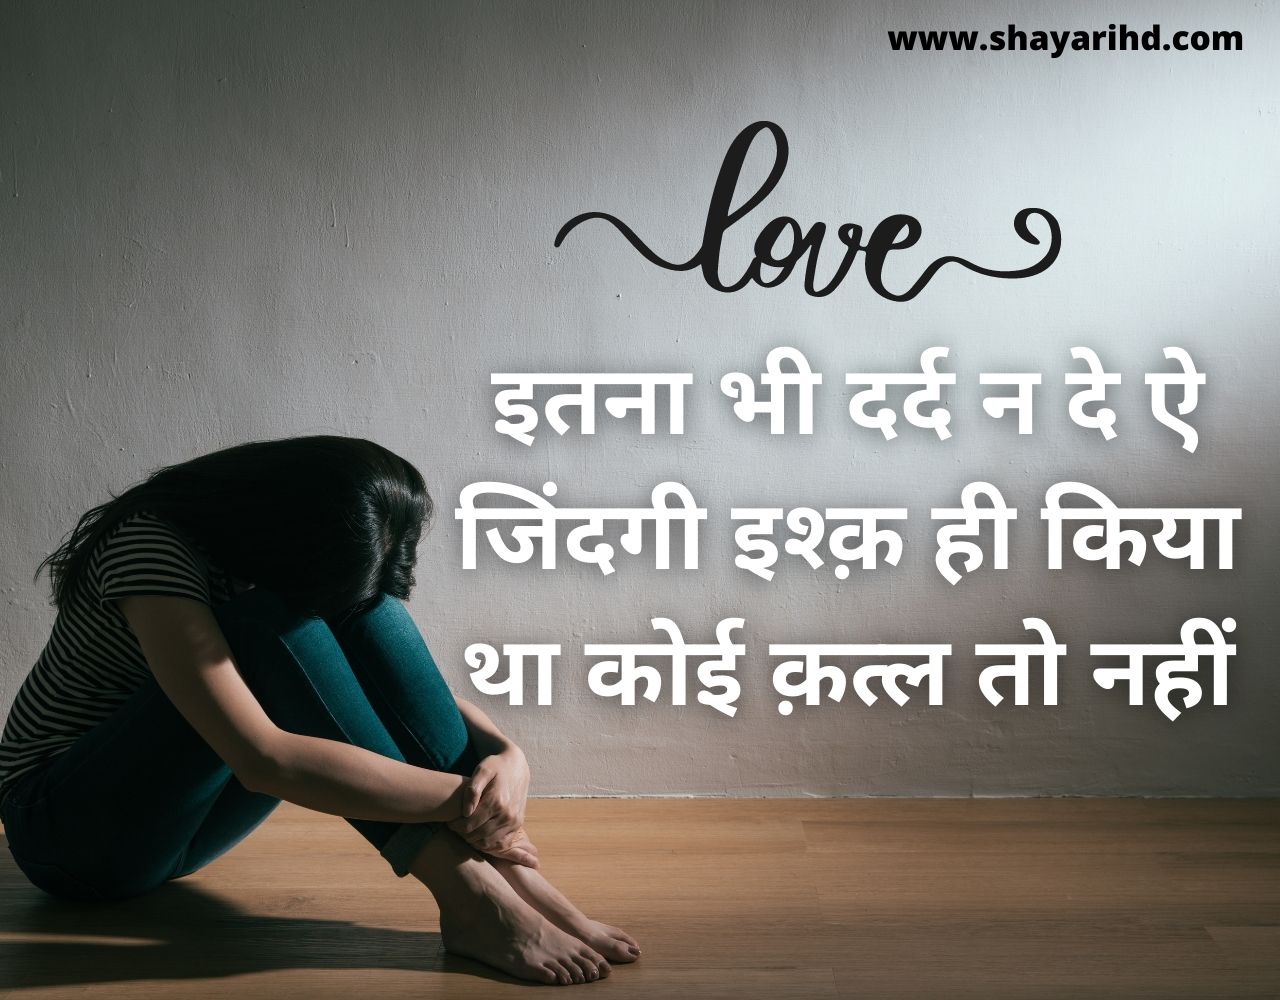 Love Shayari 2021, Latest Love Shayari in Hindi, True Love Status